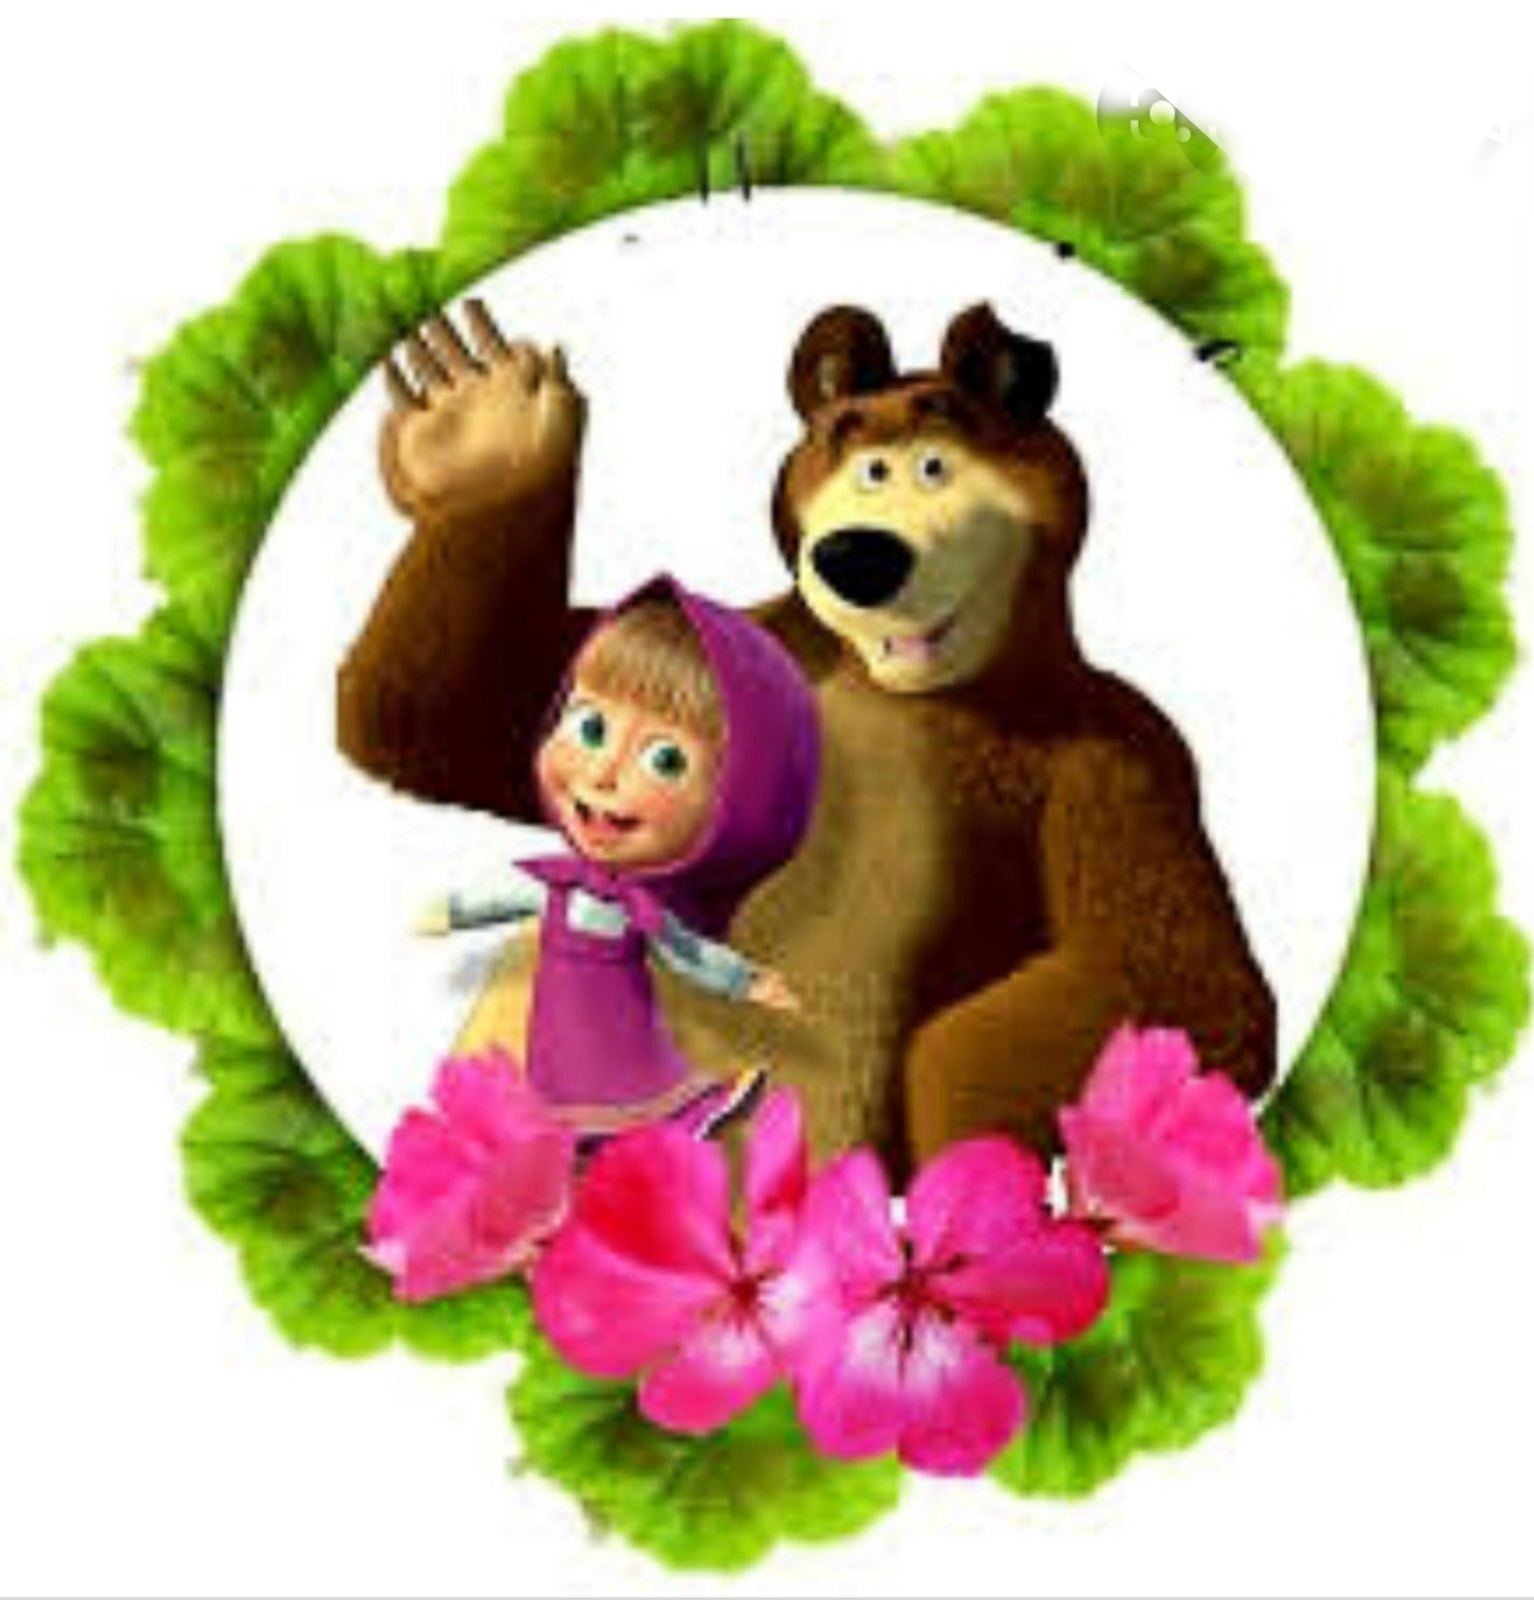 Masha e urso. Маша и медведь. Маша и медведь для печати. Маша и медведь картинки для печати. Маша и медведь фотопечать.